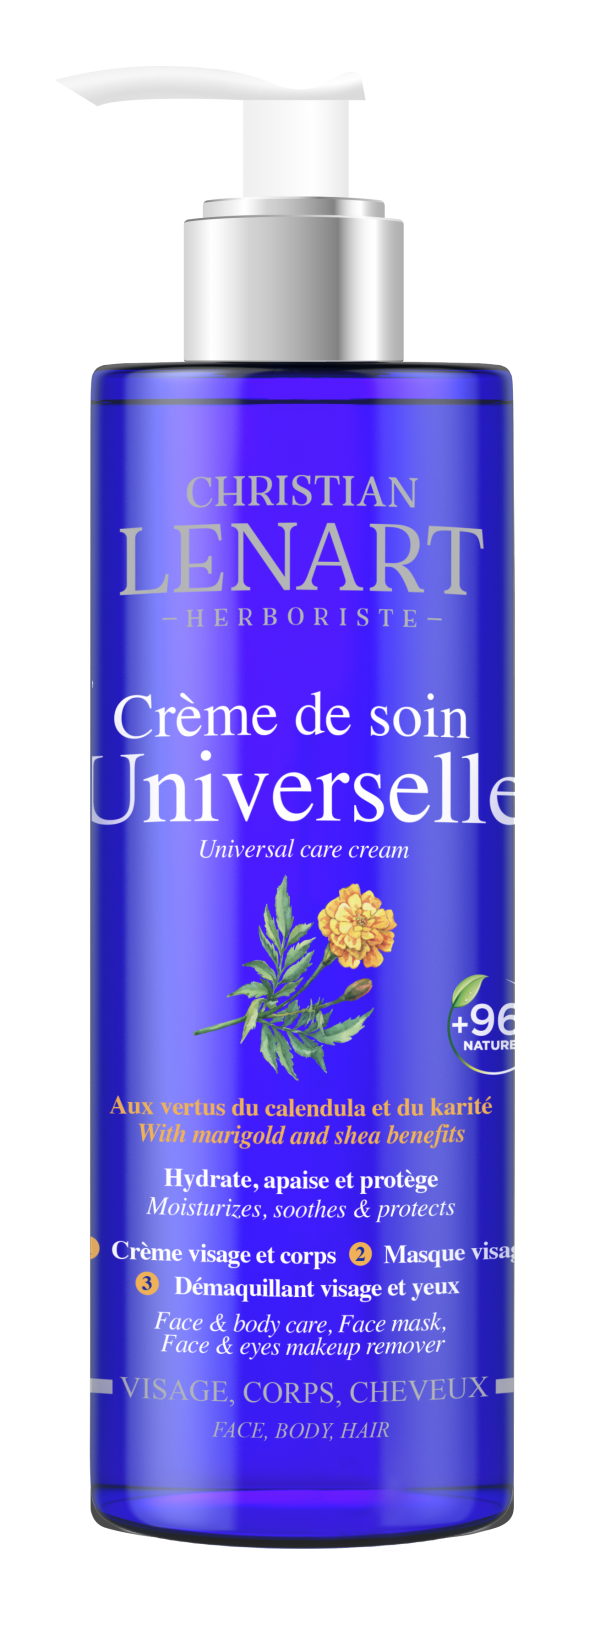 Bouteille Crème de soin Universelle Christian Lénart